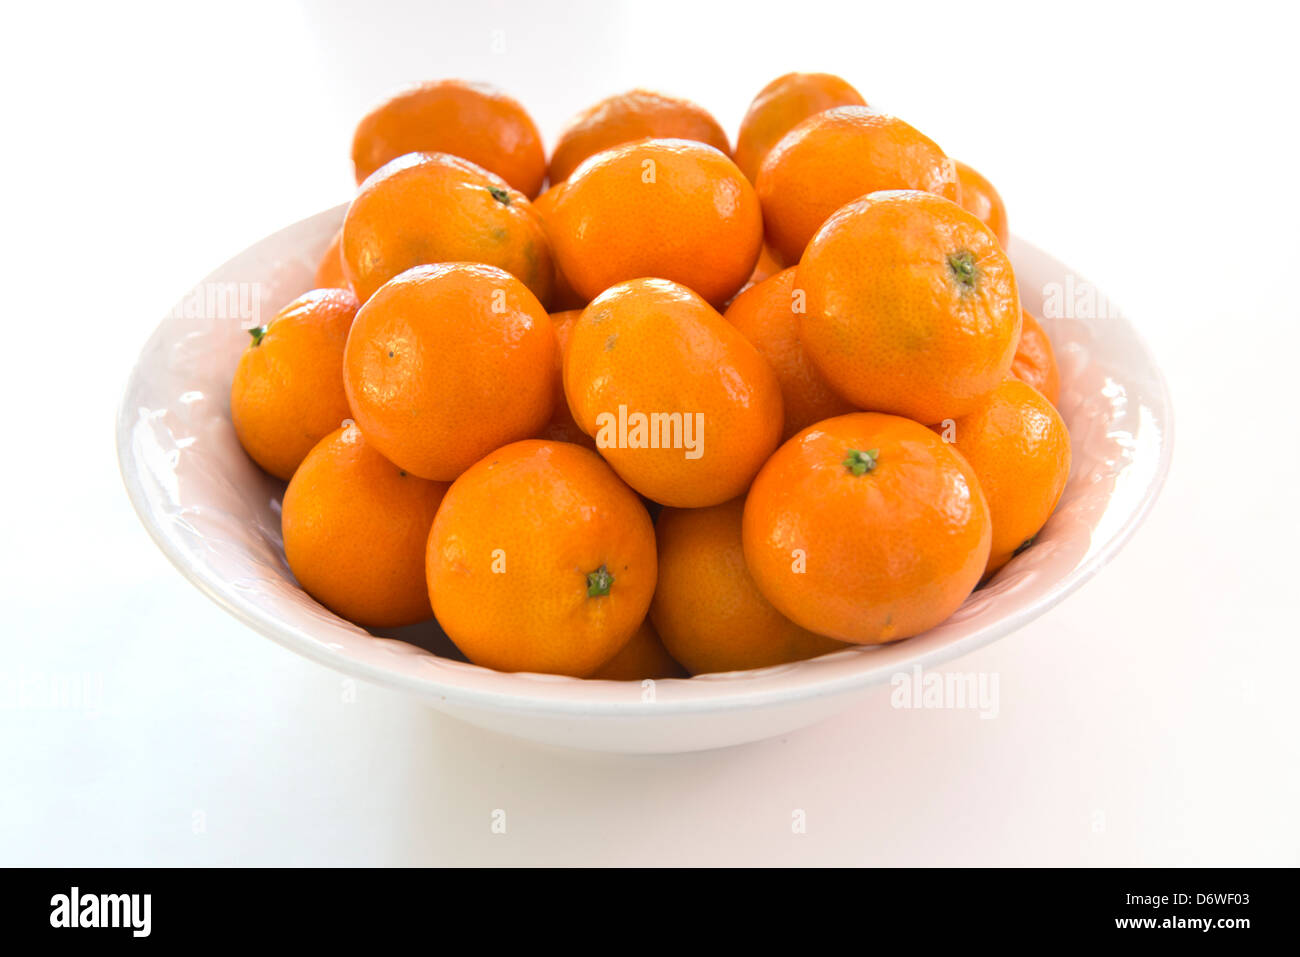 Oranges, clémentines une variété de mandarine, Citrus reticulata, dans un bol blanc, fond blanc. Banque D'Images